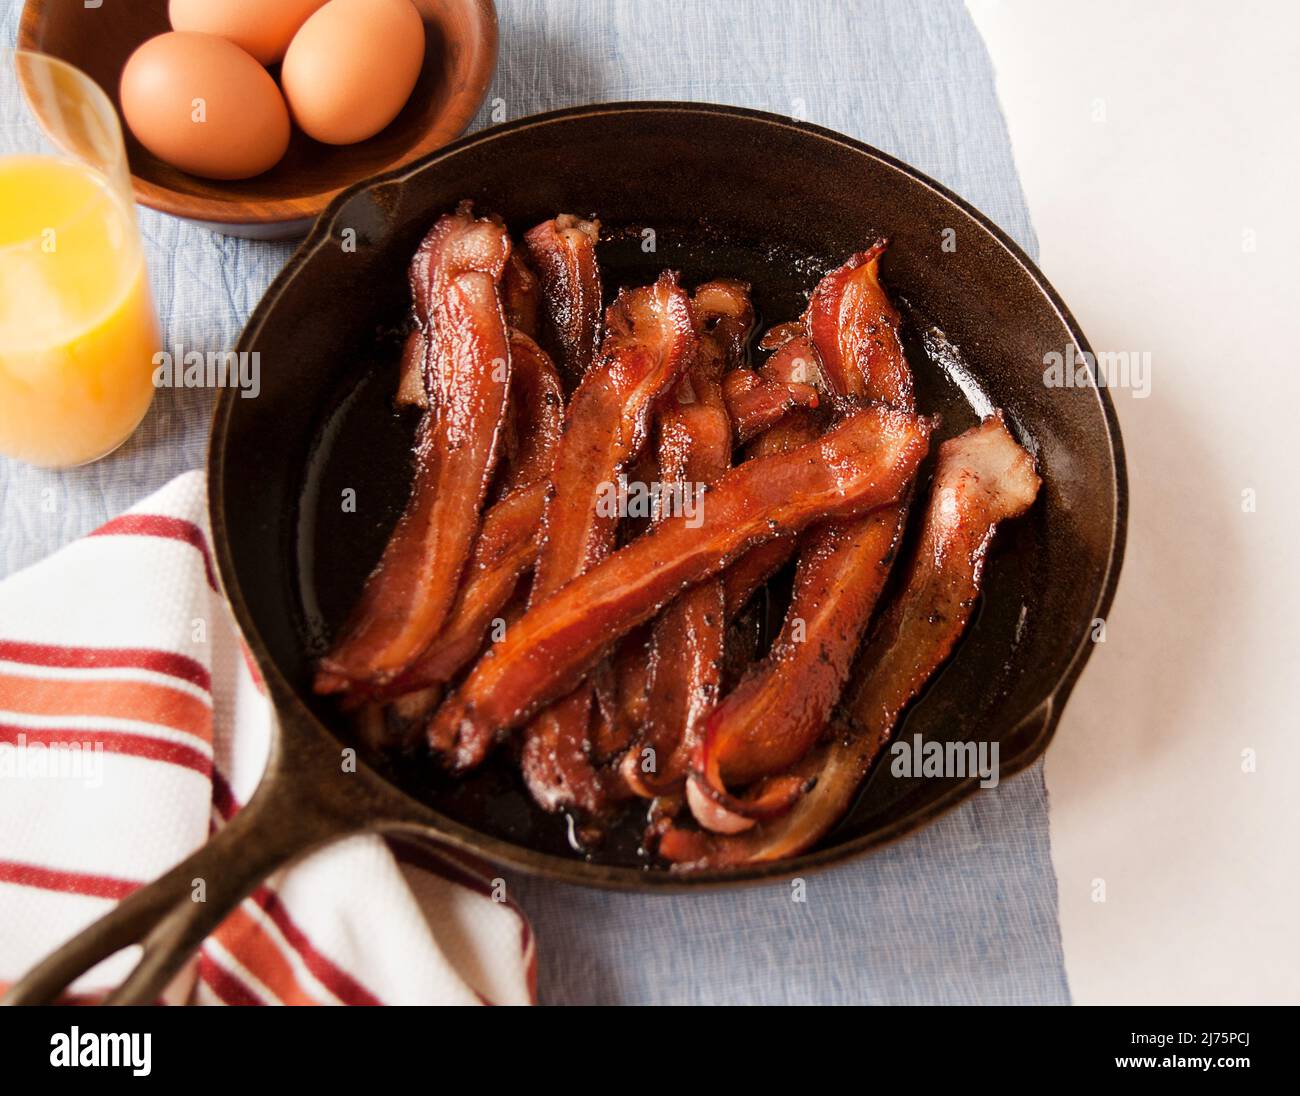 Knusprige Bacon-Streifen in einer gusseisernen Pfanne; ein Glas Orangensaft und eine Schüssel Eier Stockfoto